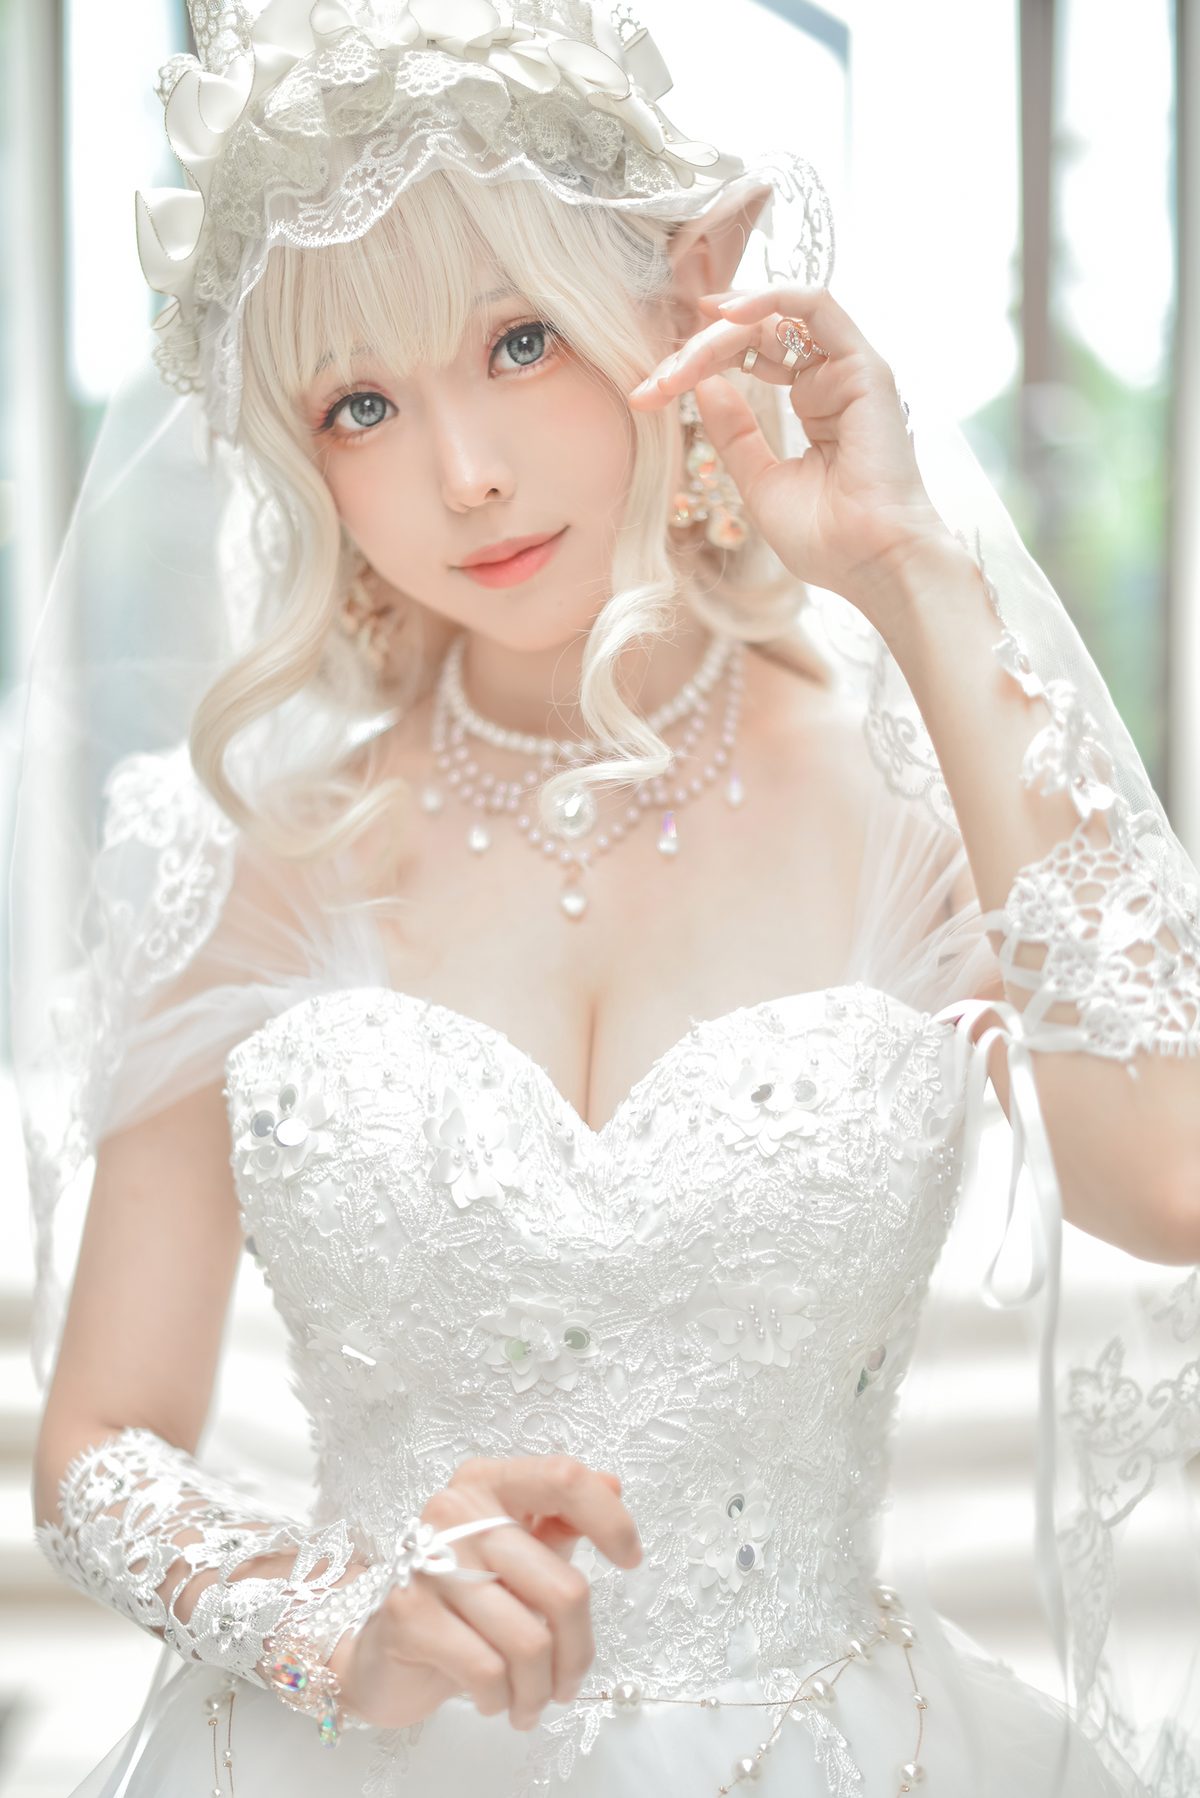 Coser@Ely_eee ElyEE子 Bride And Lingerie 0027 2750011964.jpg